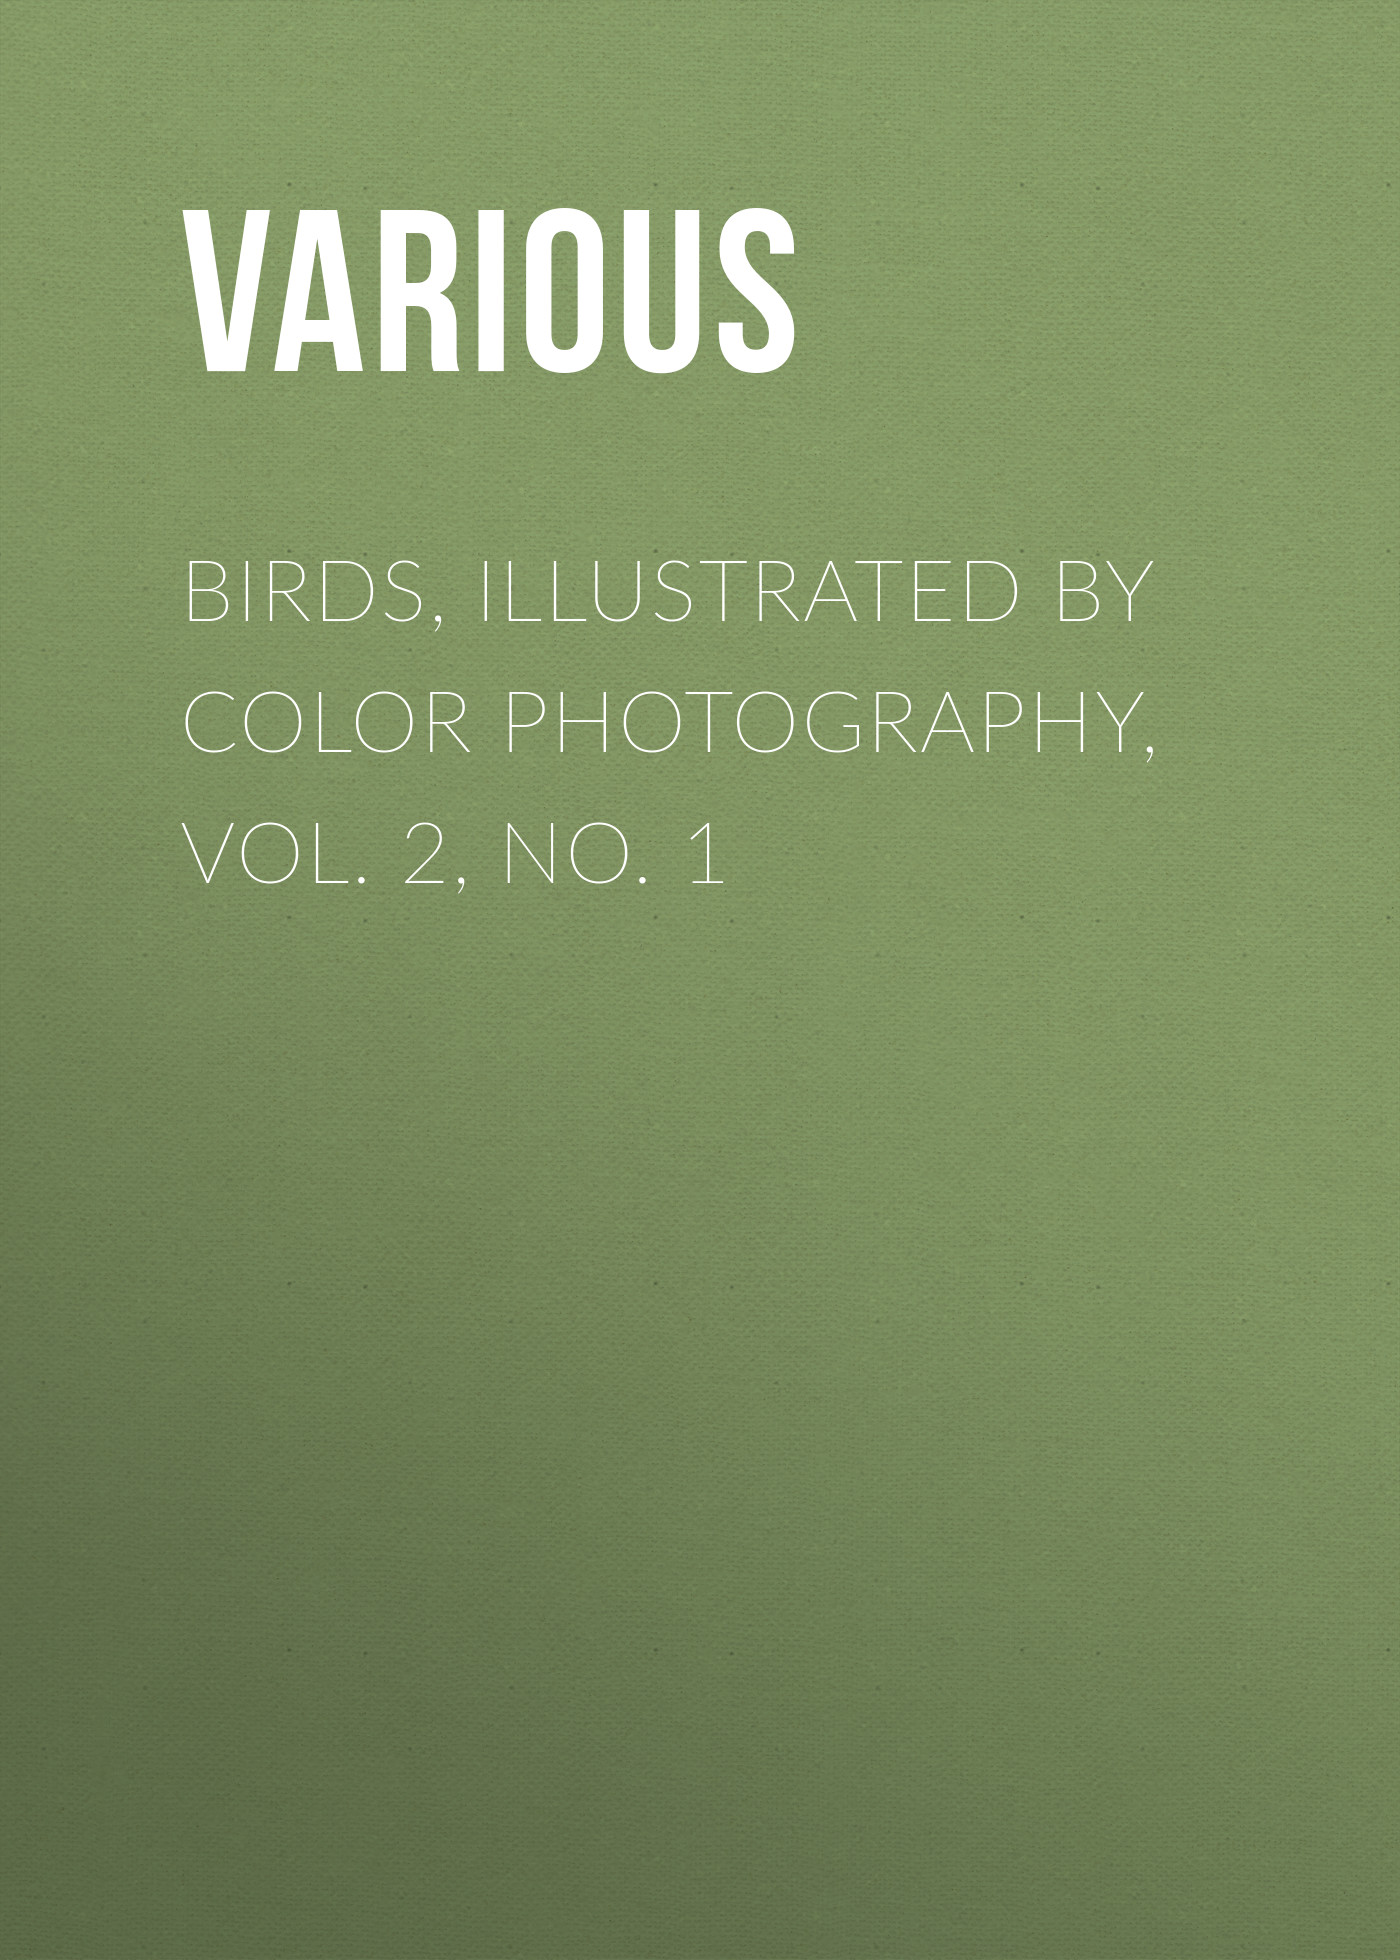 Книга Birds, Illustrated by Color Photography, Vol. 2, No. 1 из серии , созданная  Various, может относится к жанру Журналы, Биология, Природа и животные, Зарубежная образовательная литература. Стоимость электронной книги Birds, Illustrated by Color Photography, Vol. 2, No. 1 с идентификатором 25569303 составляет 0 руб.